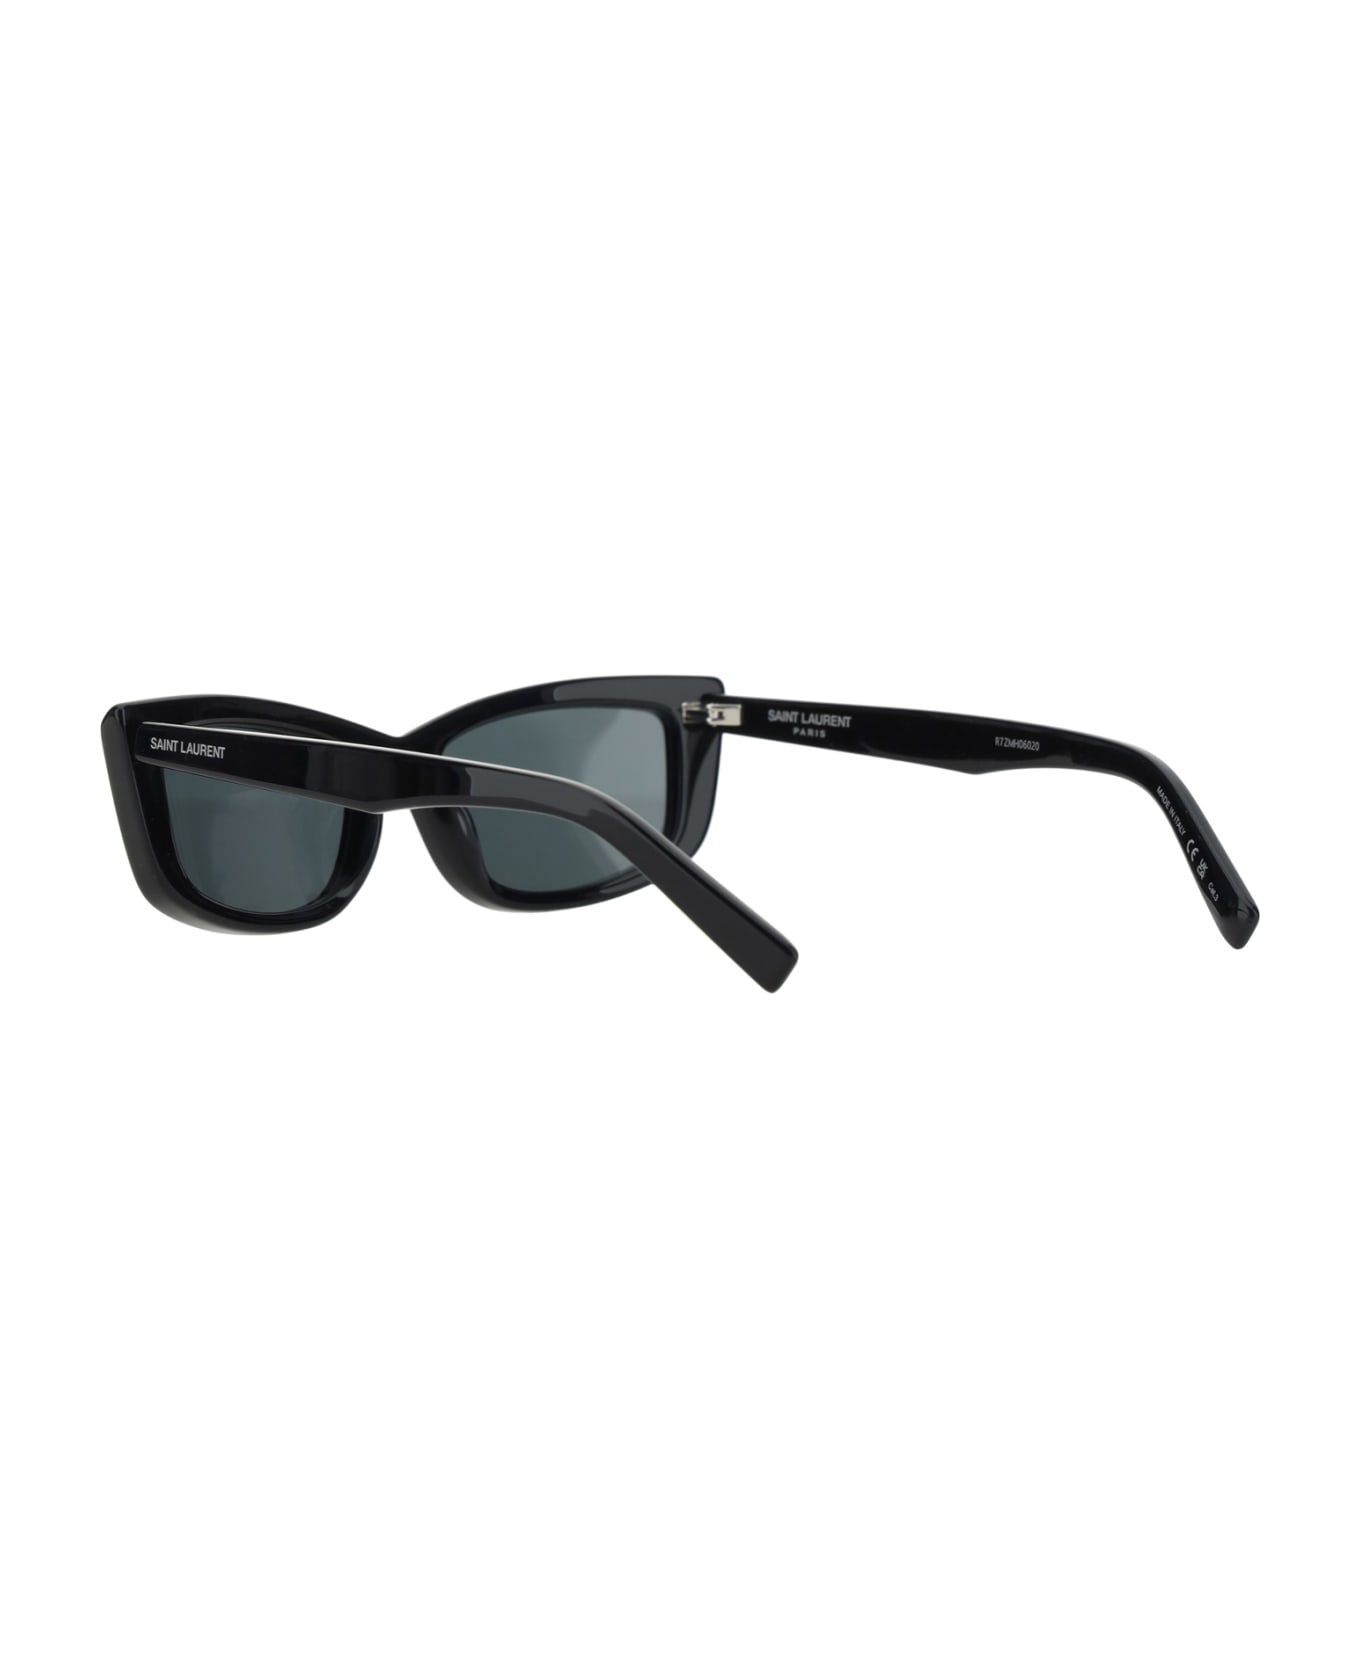 Saint Laurent Sunglasses 658 - Black Black Black サングラス